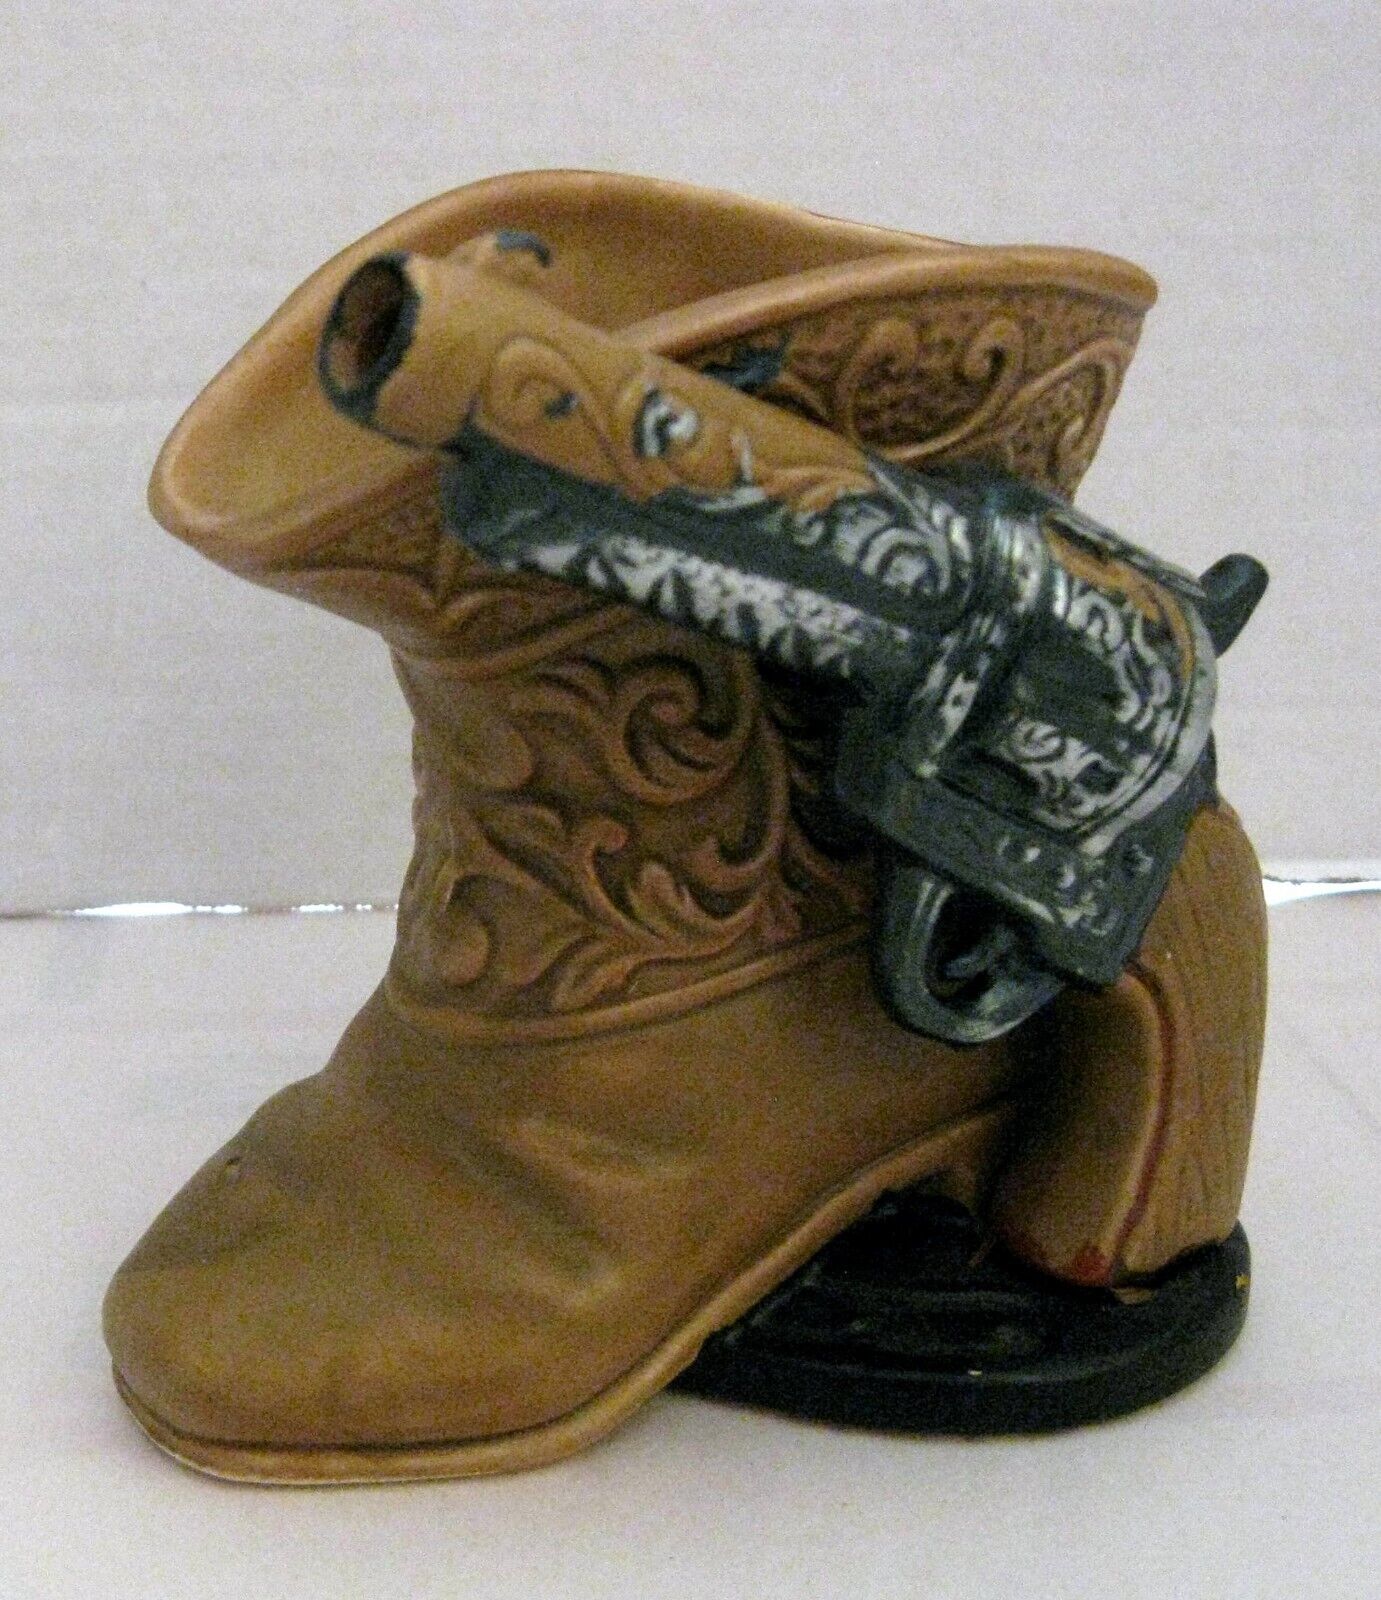 Cowboy Boot Revolver Napco Made in Japan Ceramic Vase Planter Made in Japan